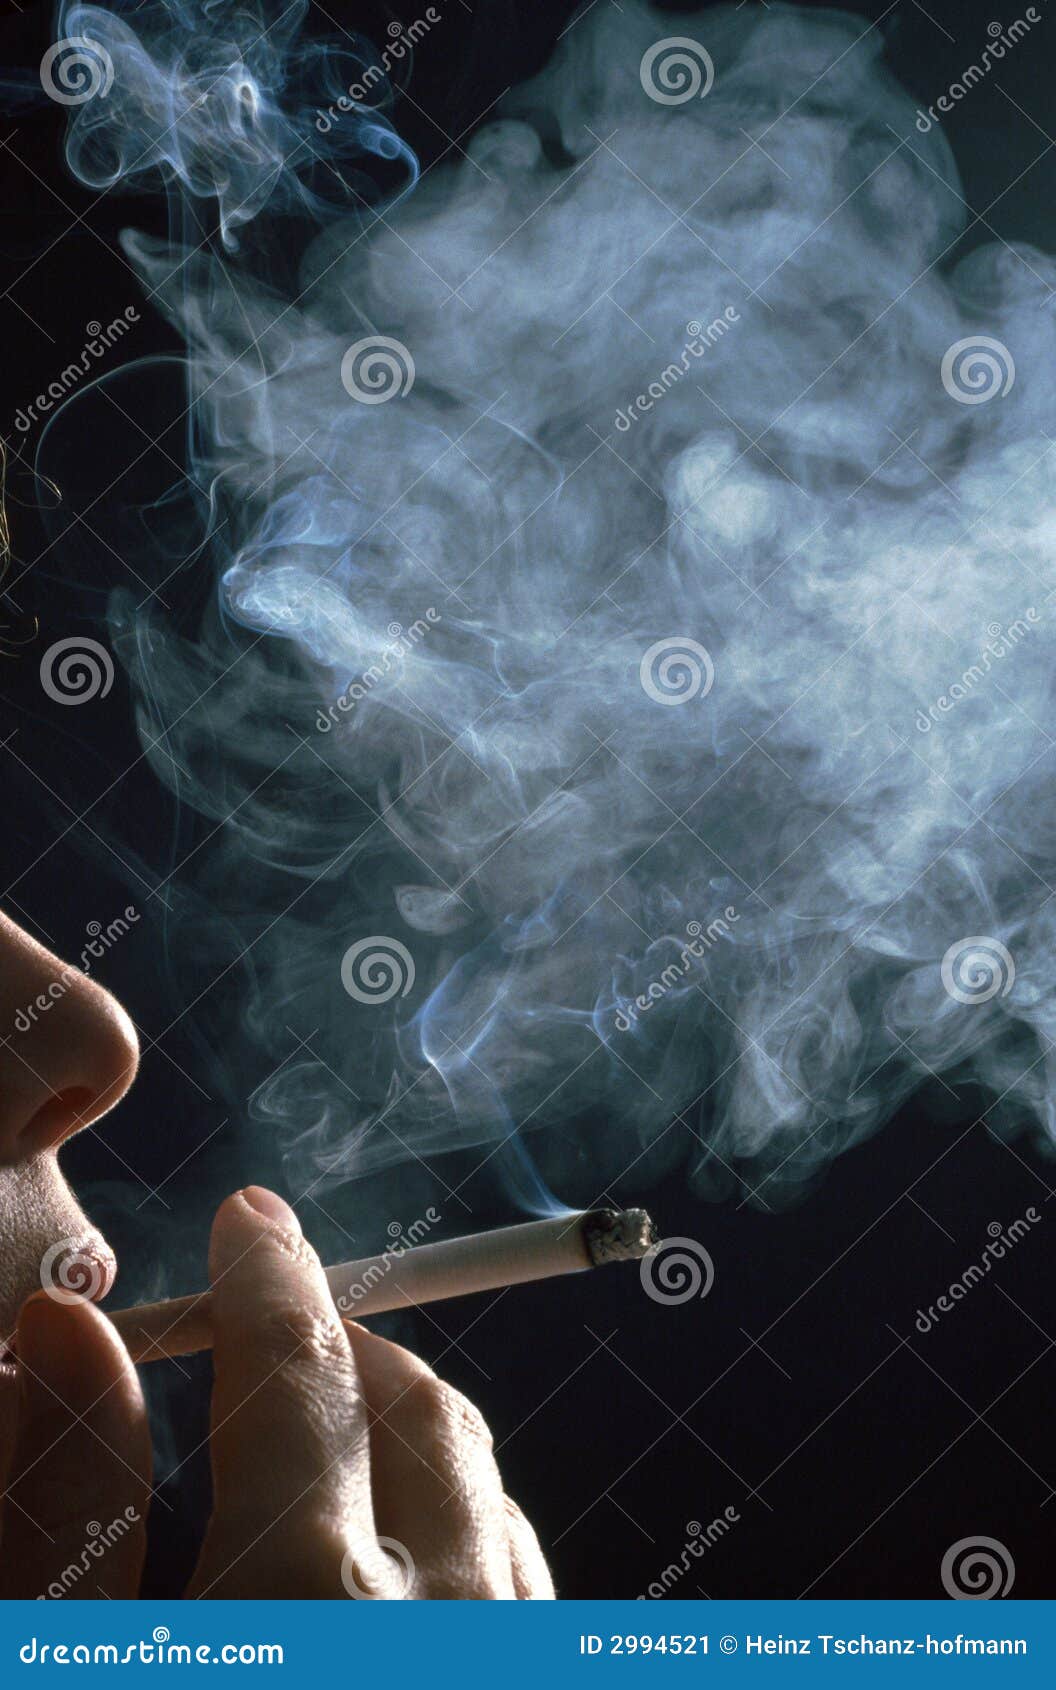 Рингтон дым сигарет. Курение дым. Девушка курит. Выпускает дым. Девушки в дыму от сигарет.